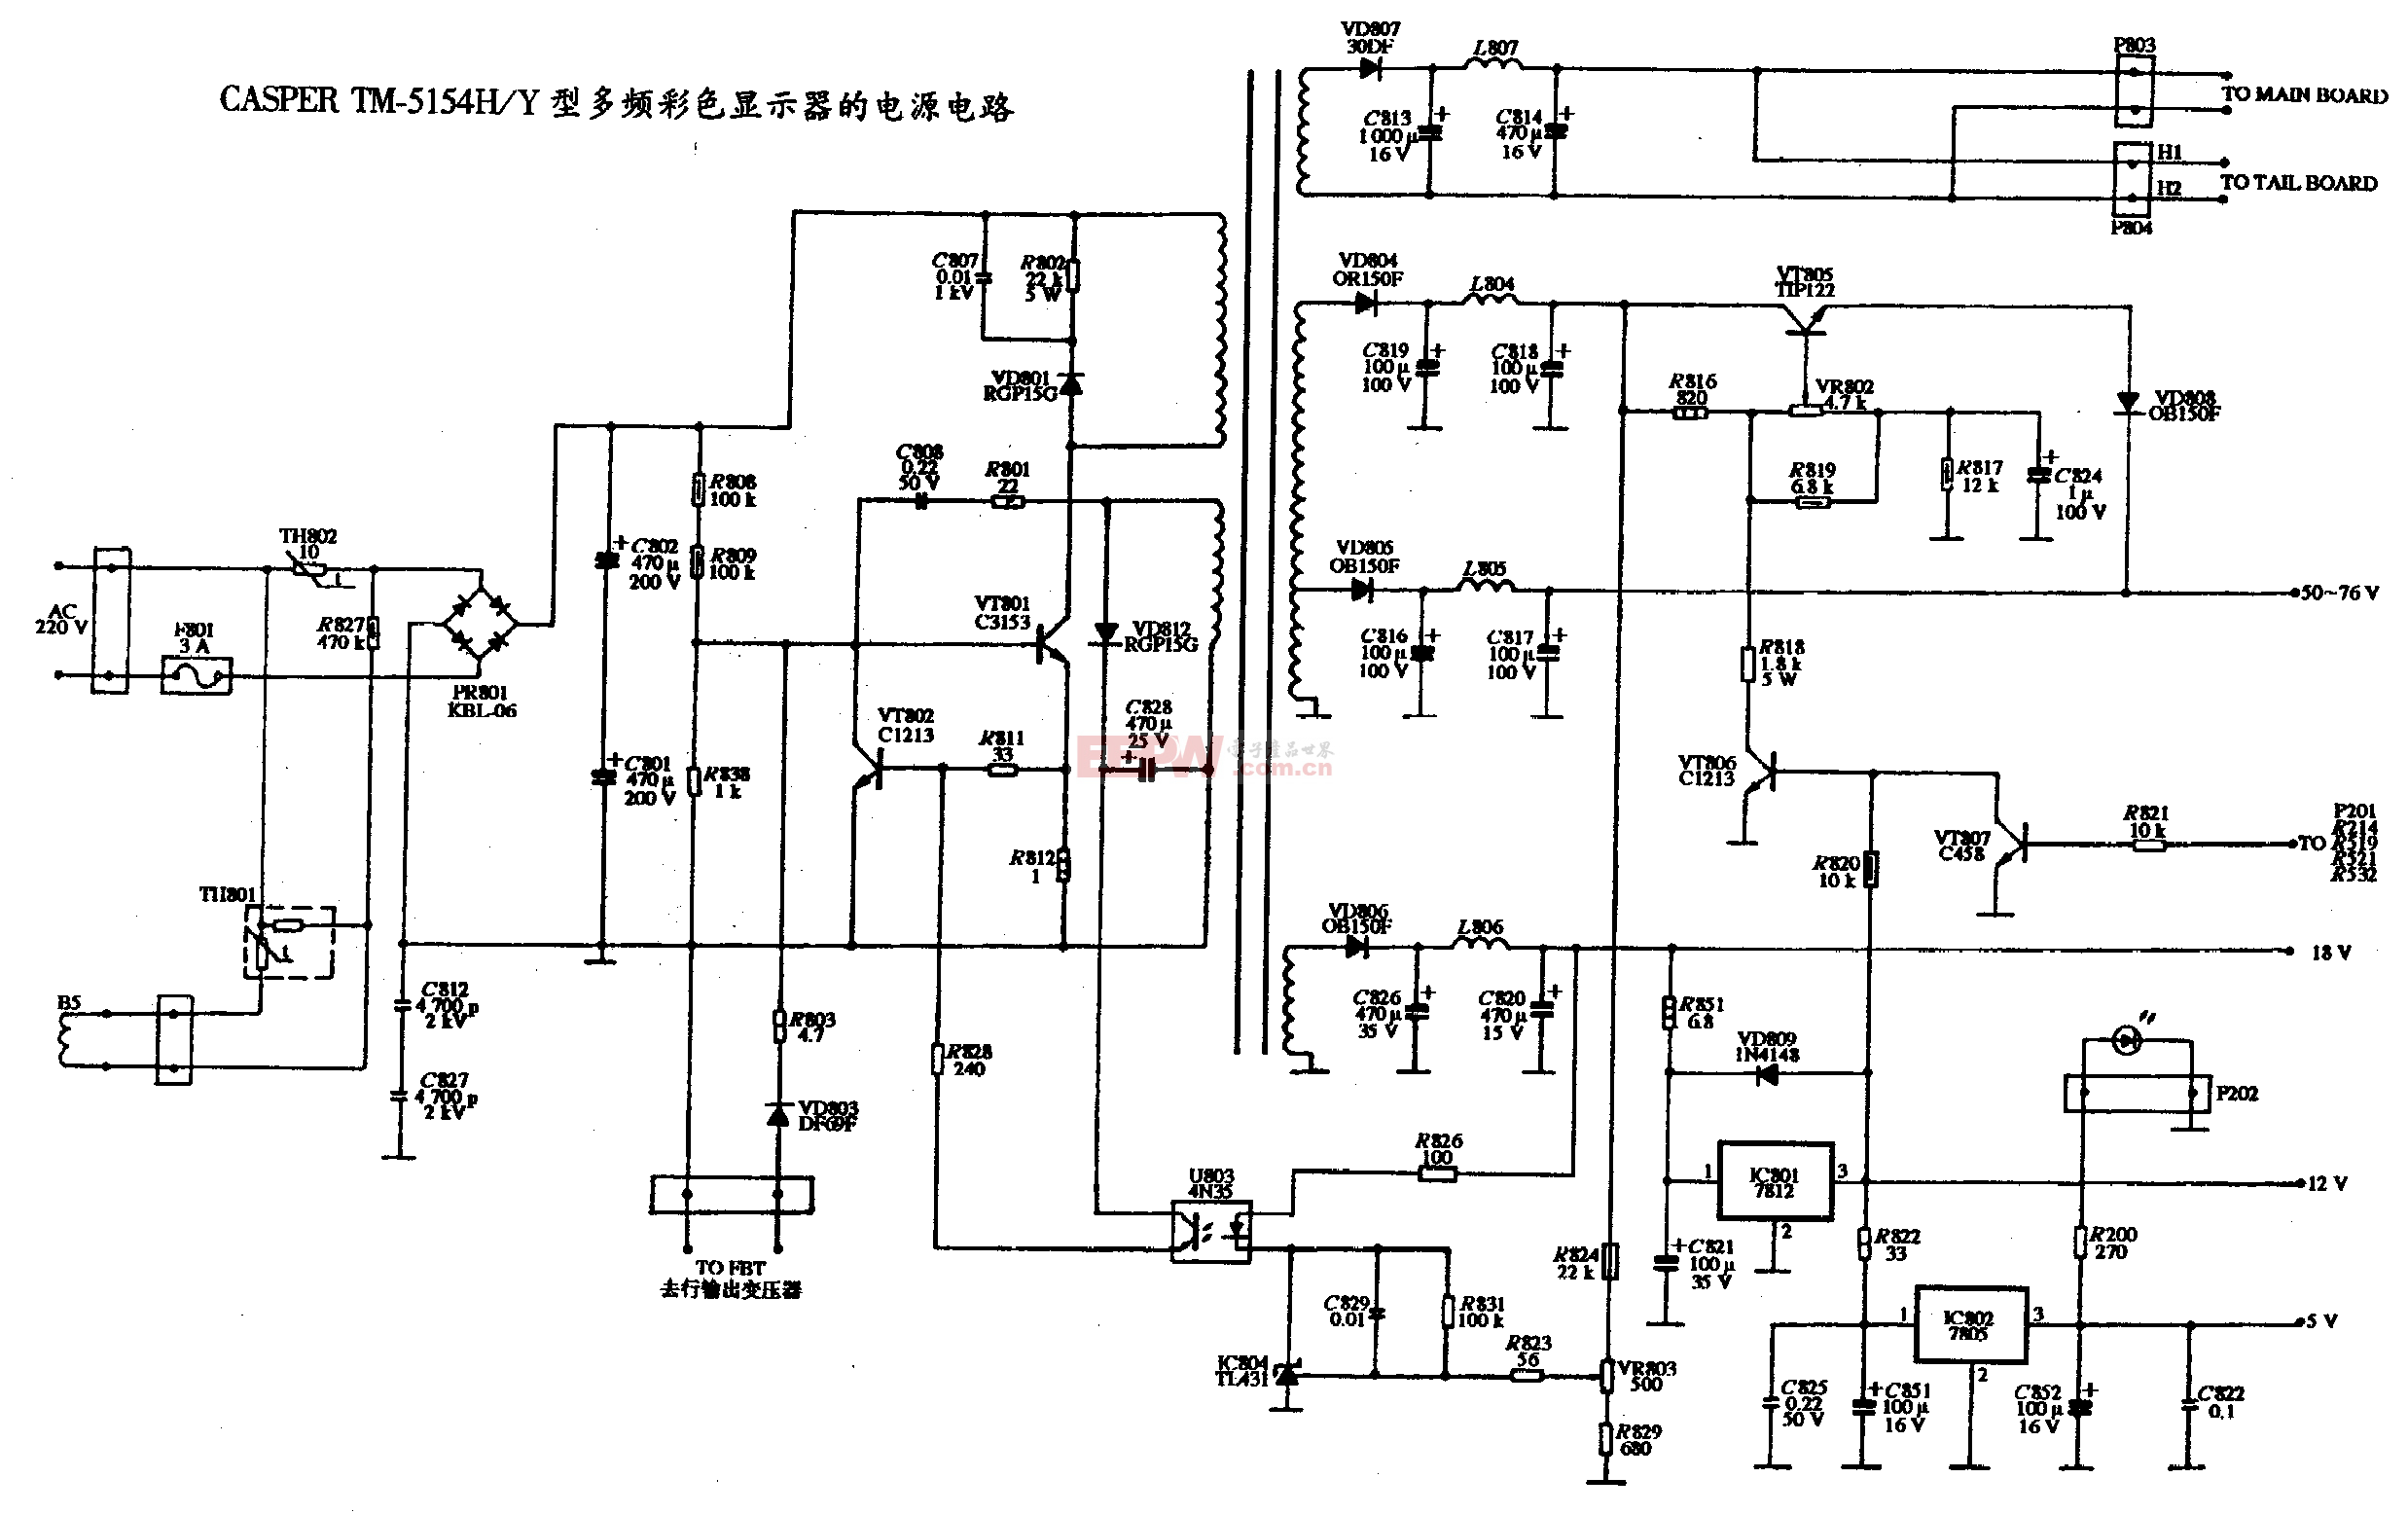 22、CASPER TM-5154HY型多频彩色显示器的电源电路图